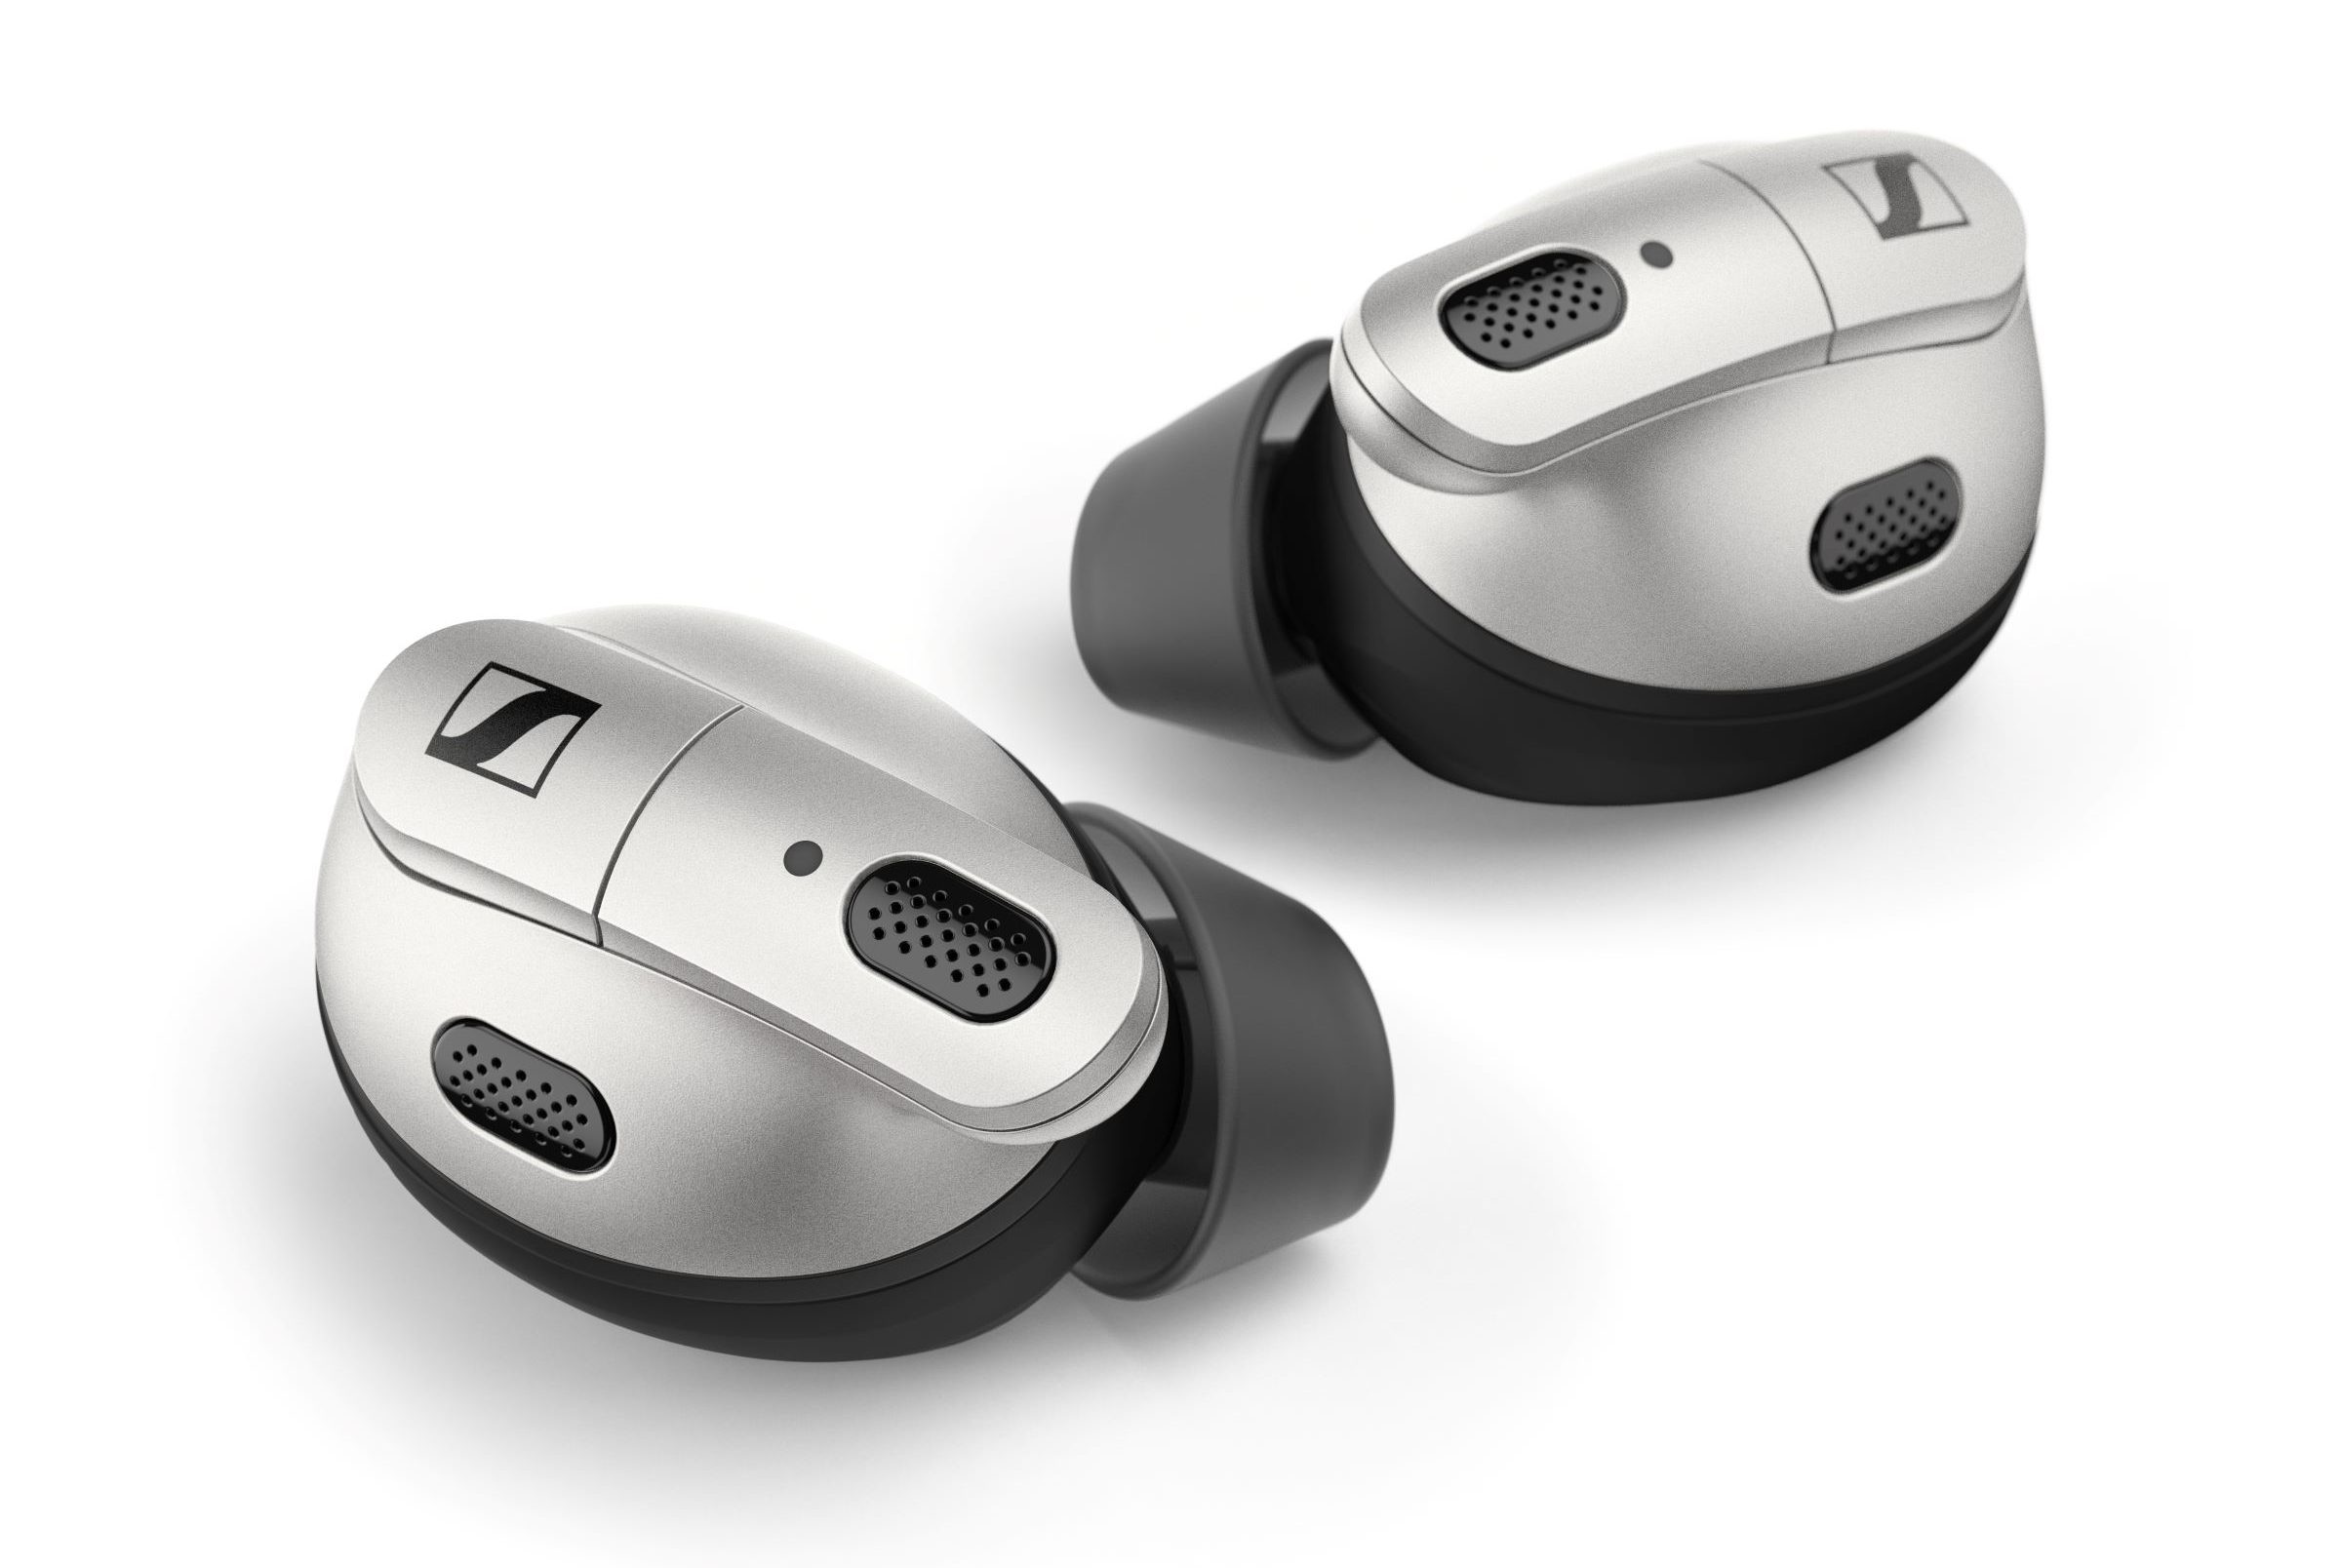 Uutuus: ConC 400 -kuulokkeet, jotka sisältävät kuulokojeteknologiaa